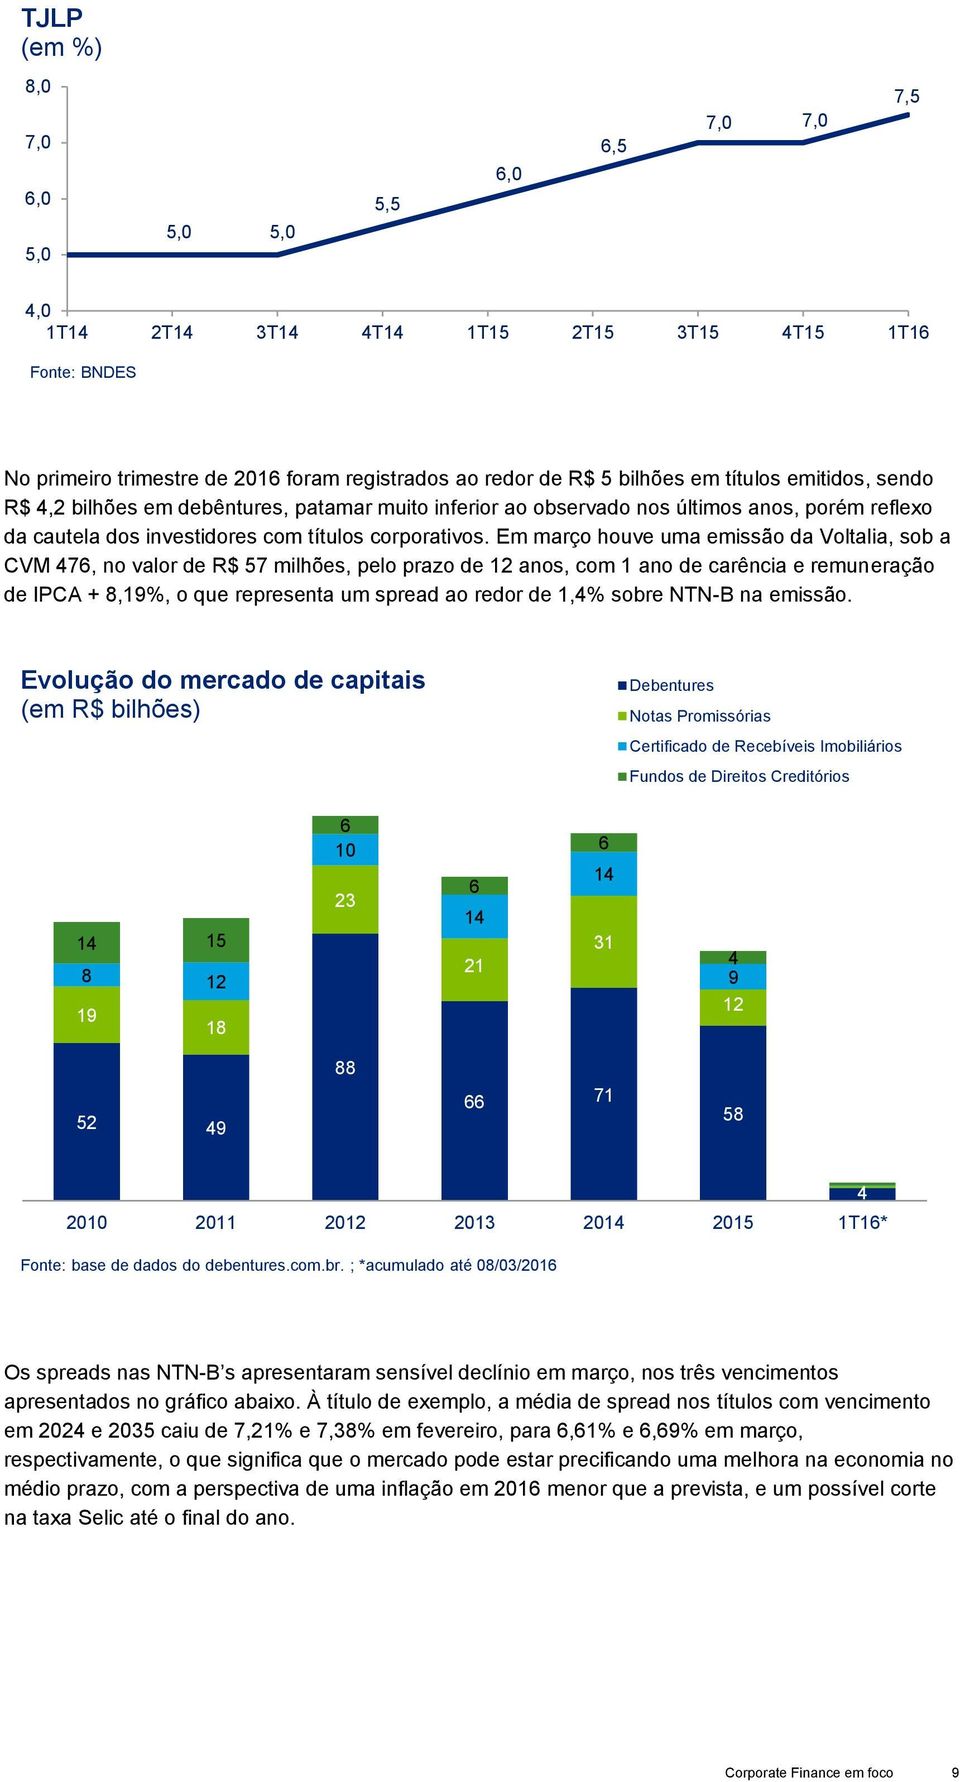 Em março houve uma emissão da Voltalia, sob a CVM 476, no valor de R$ 57 milhões, pelo prazo de 12 anos, com 1 ano de carência e remuneração de IPCA + 8,19%, o que representa um spread ao redor de